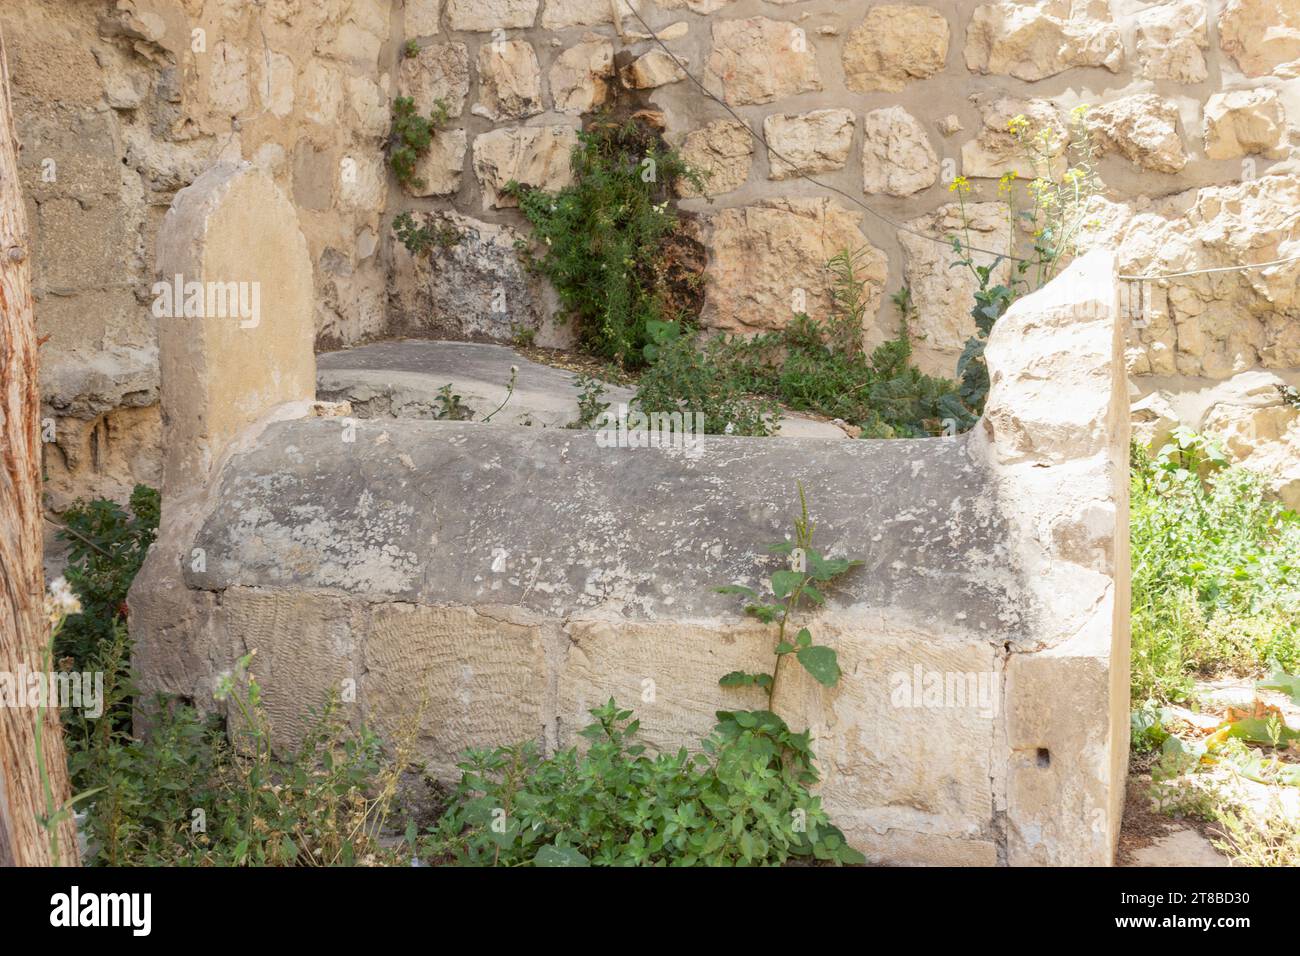 Jérusalem, Israël. L'une des deux tombes que l'on croit être celles des architectes des remparts de la vieille ville. Selon la légende, Suleiman le magnifique avait t Banque D'Images